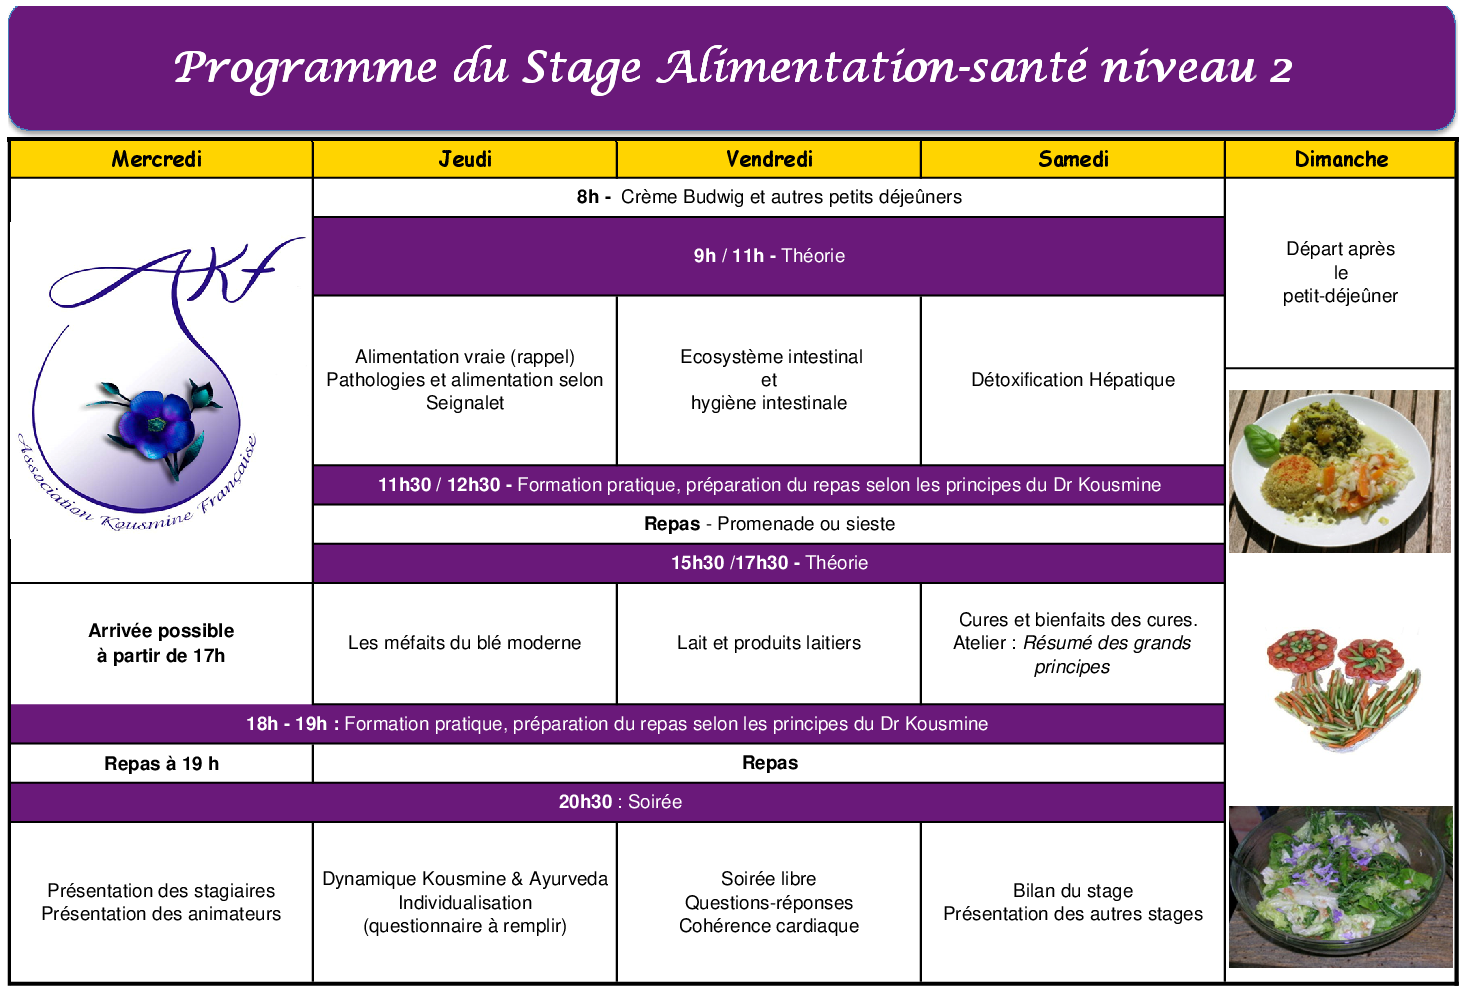 Programme Stage Alimentation-santé niveau 2